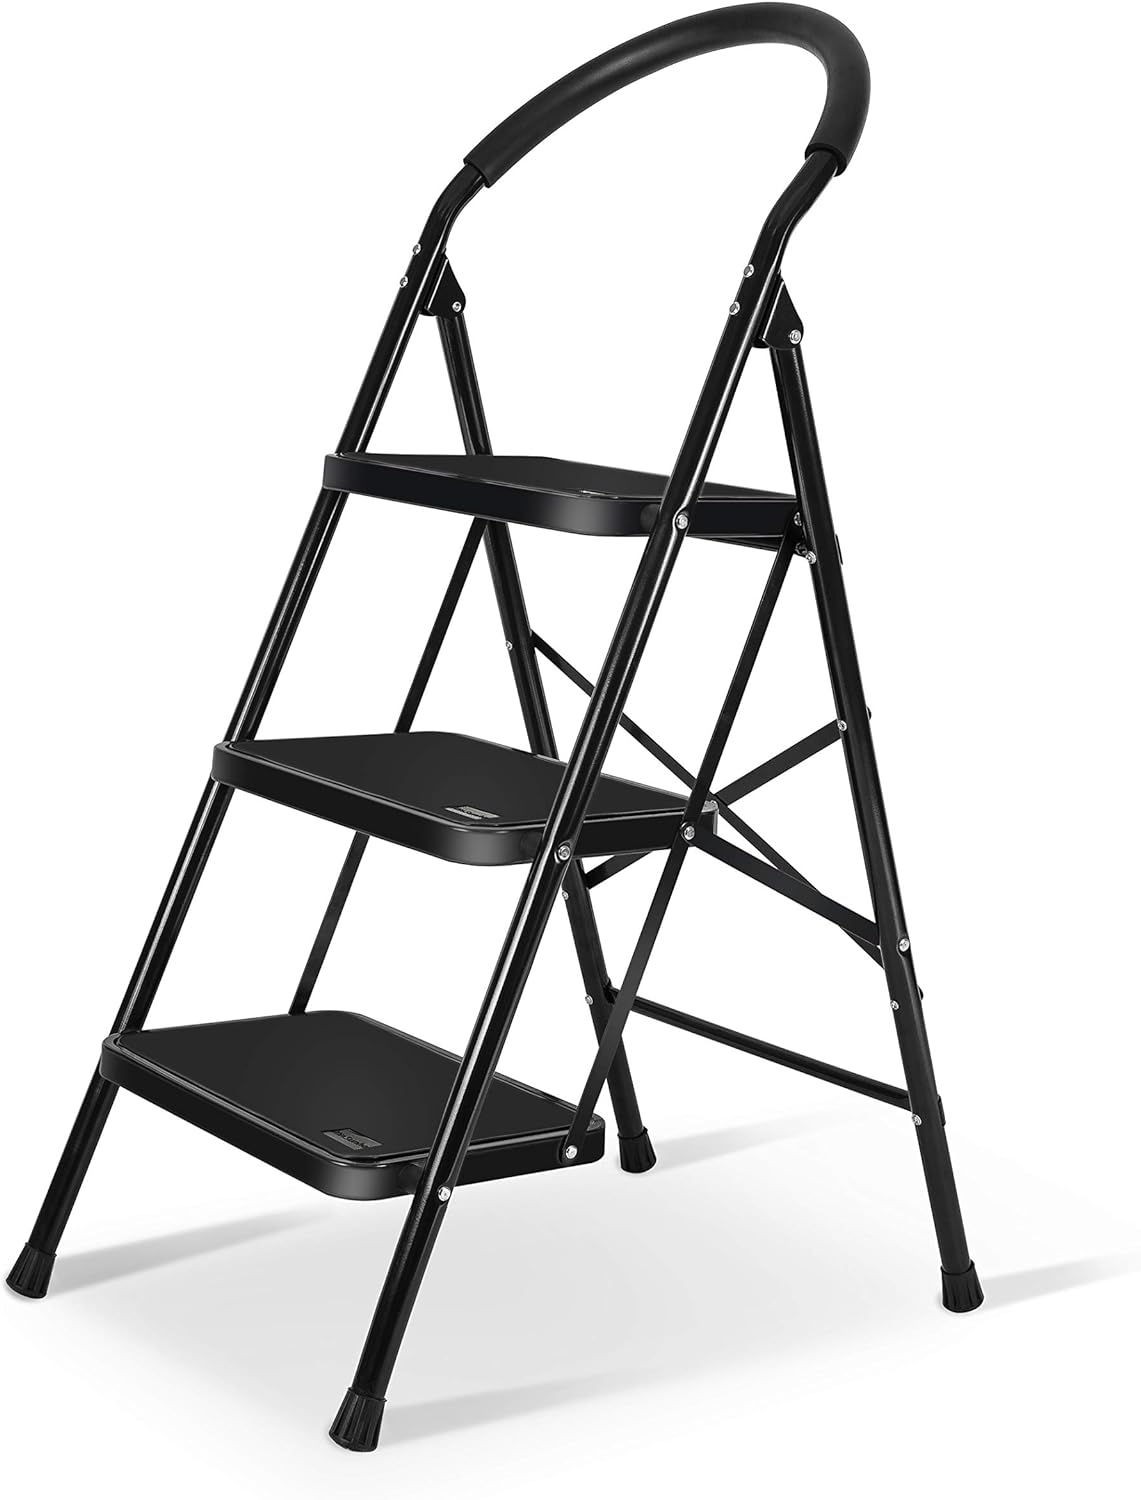 A ladder